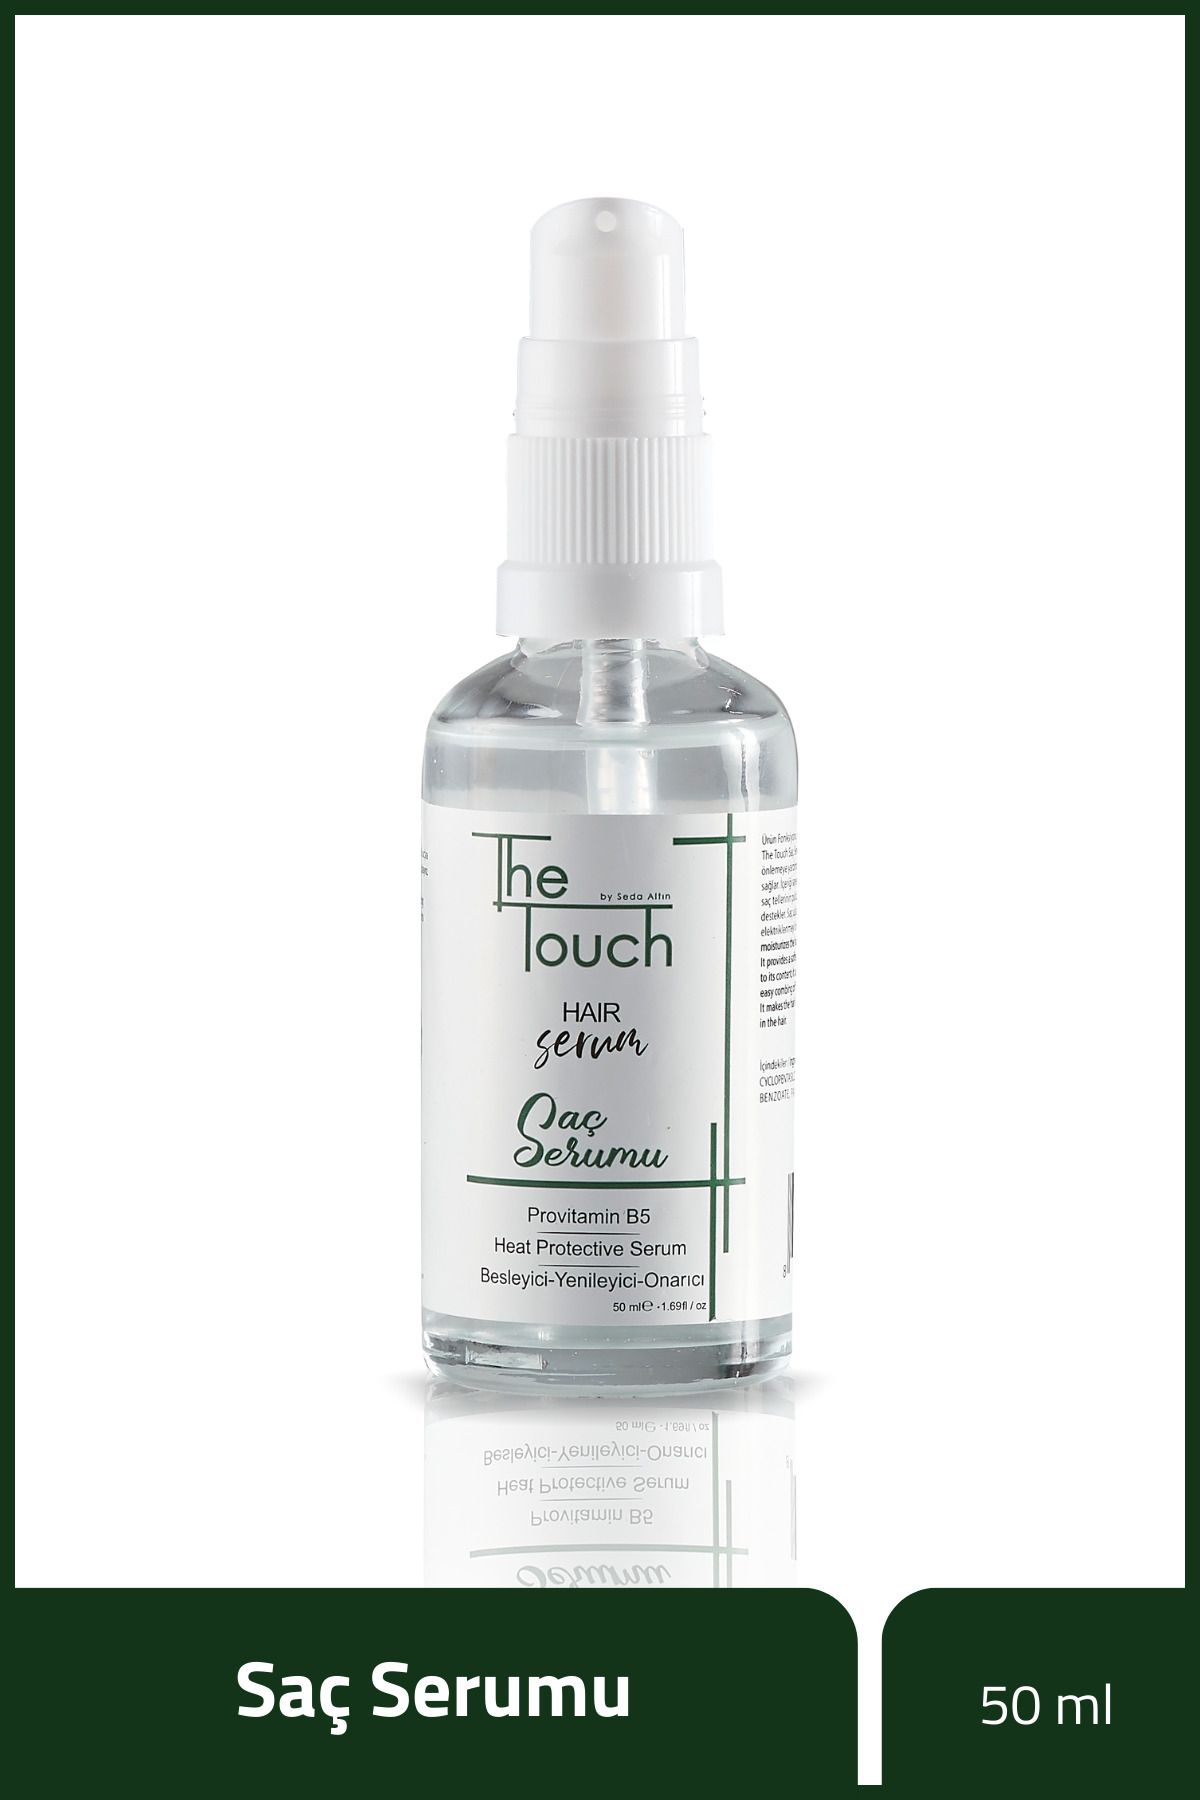 The Touch By Seda Altın Saç Serumu - Hair Serum Provitamin B5, Besleyici - Yenileyici - Onarıcı, Heat Protective Serum 50 M